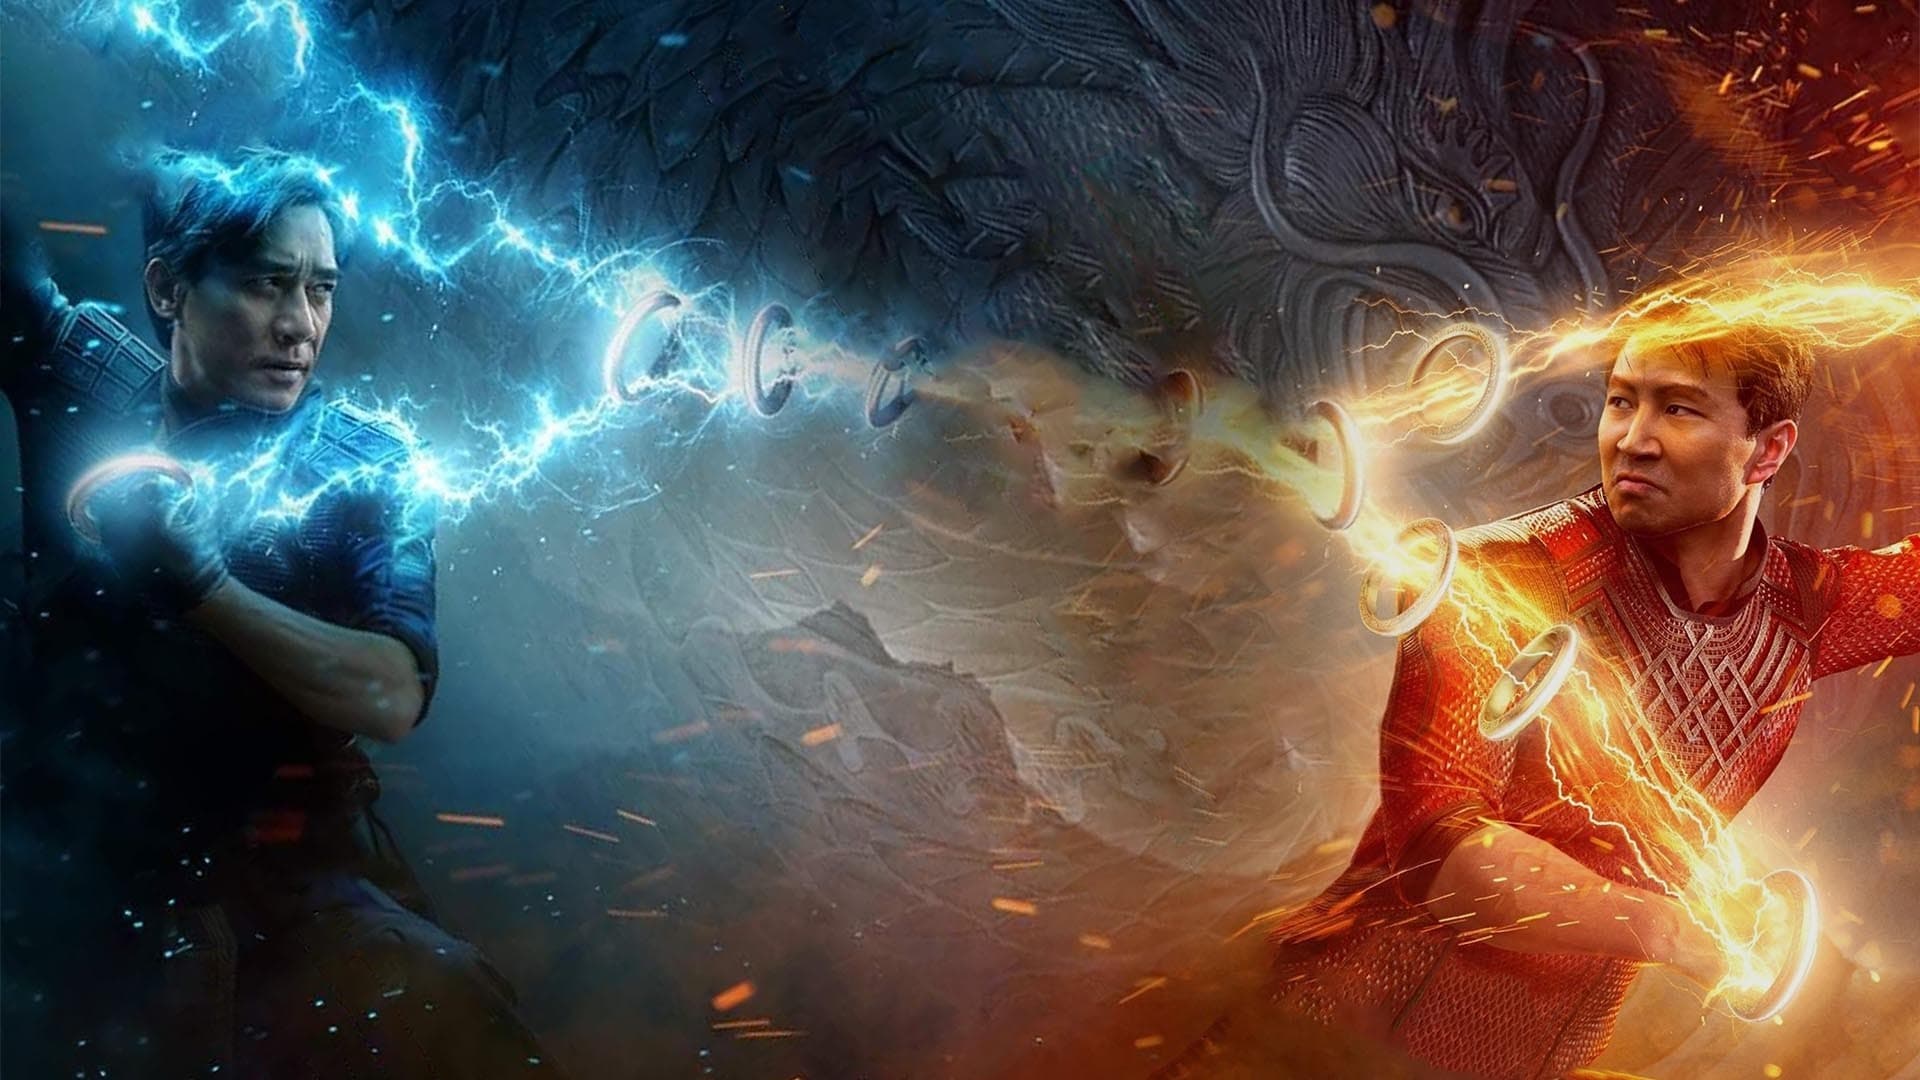 ชาง-ชี กับตำนานลับเท็นริงส์ Shang-Chi and the Legend of The Ten Rings ออนไลน์โดยสมบูรณ์ในปี 2021